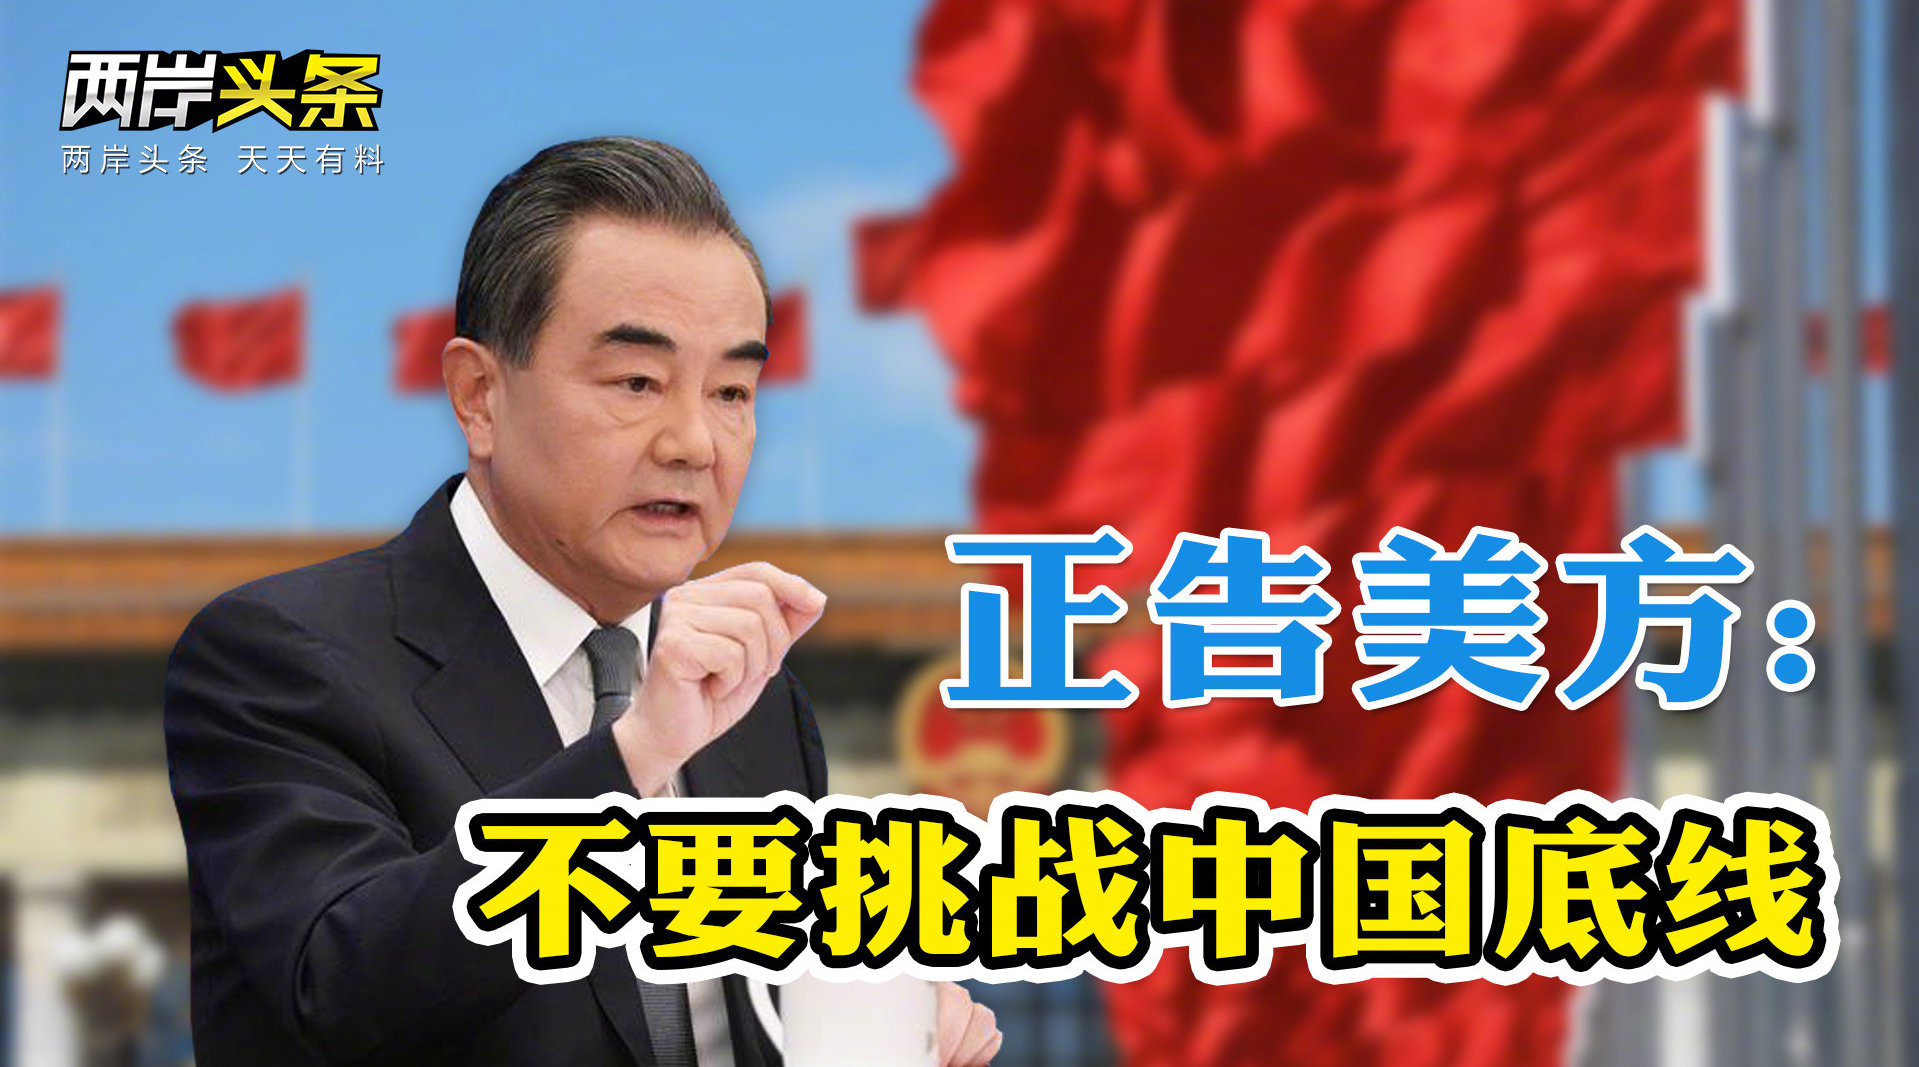 汪洋参加台湾代表团审议 王毅谈台湾问题 国防部促美停止对台军售